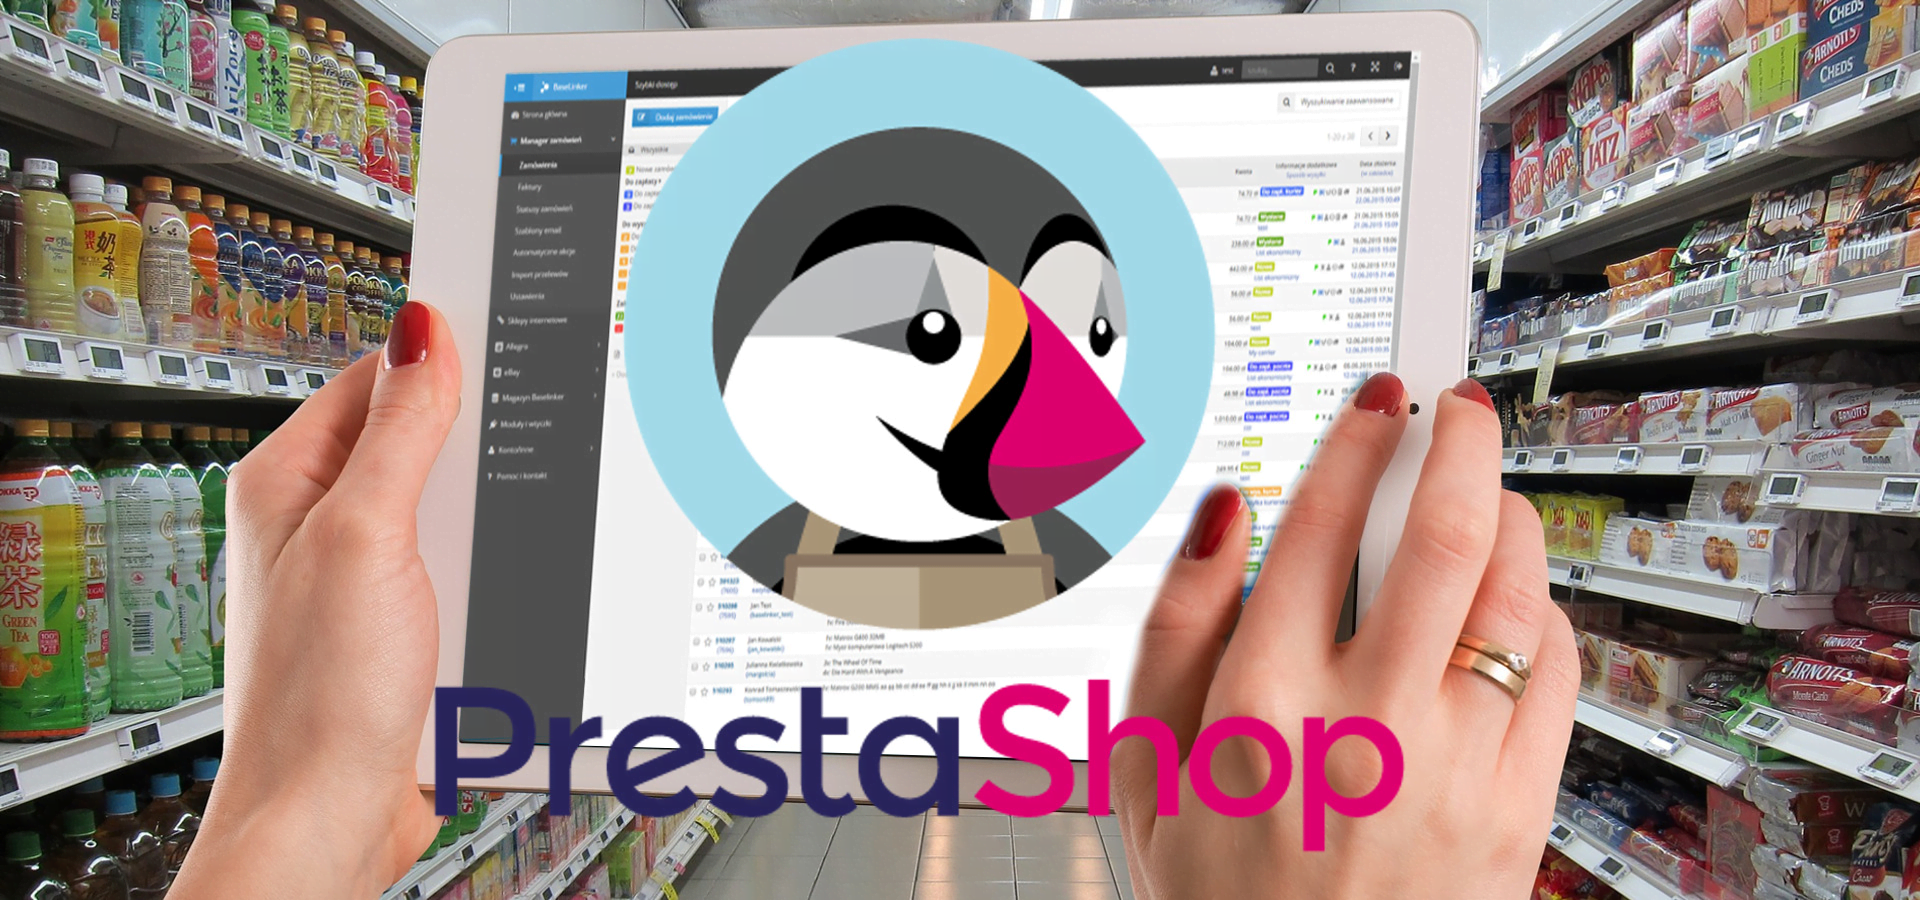 stawianie sklepu internetowego Prestashop